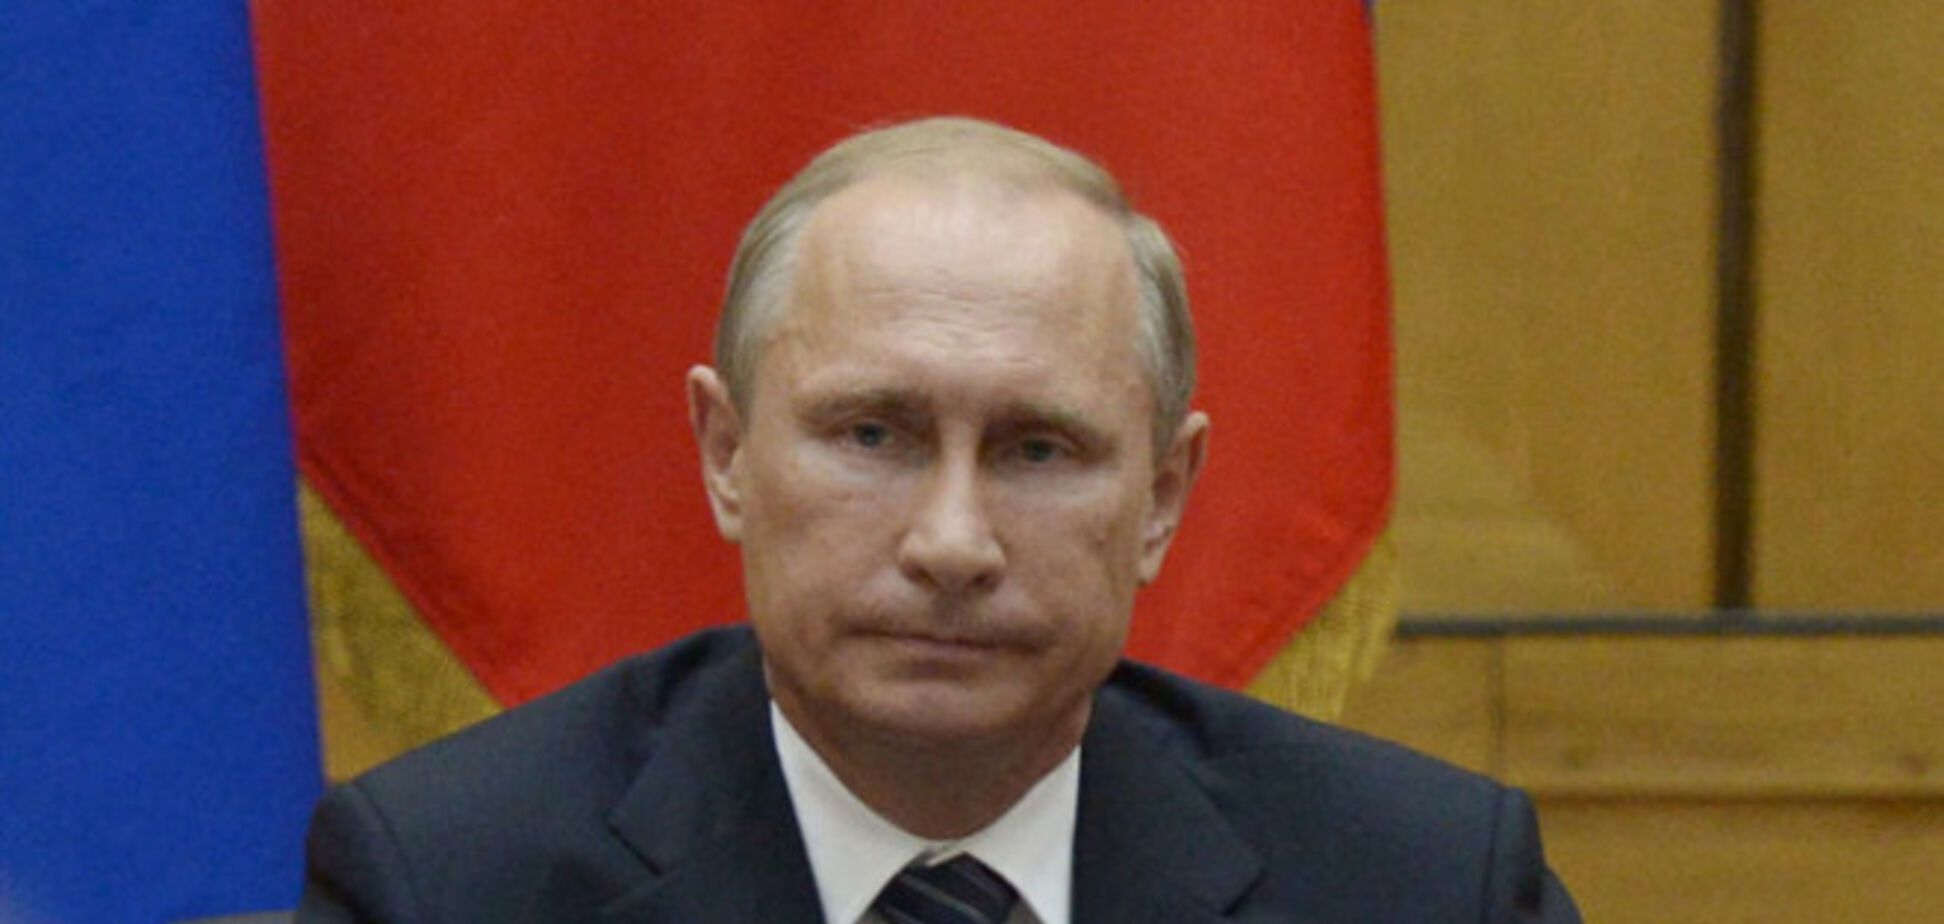 Путин нарушил конституцию РФ, и его ждет импичмент – Немцов